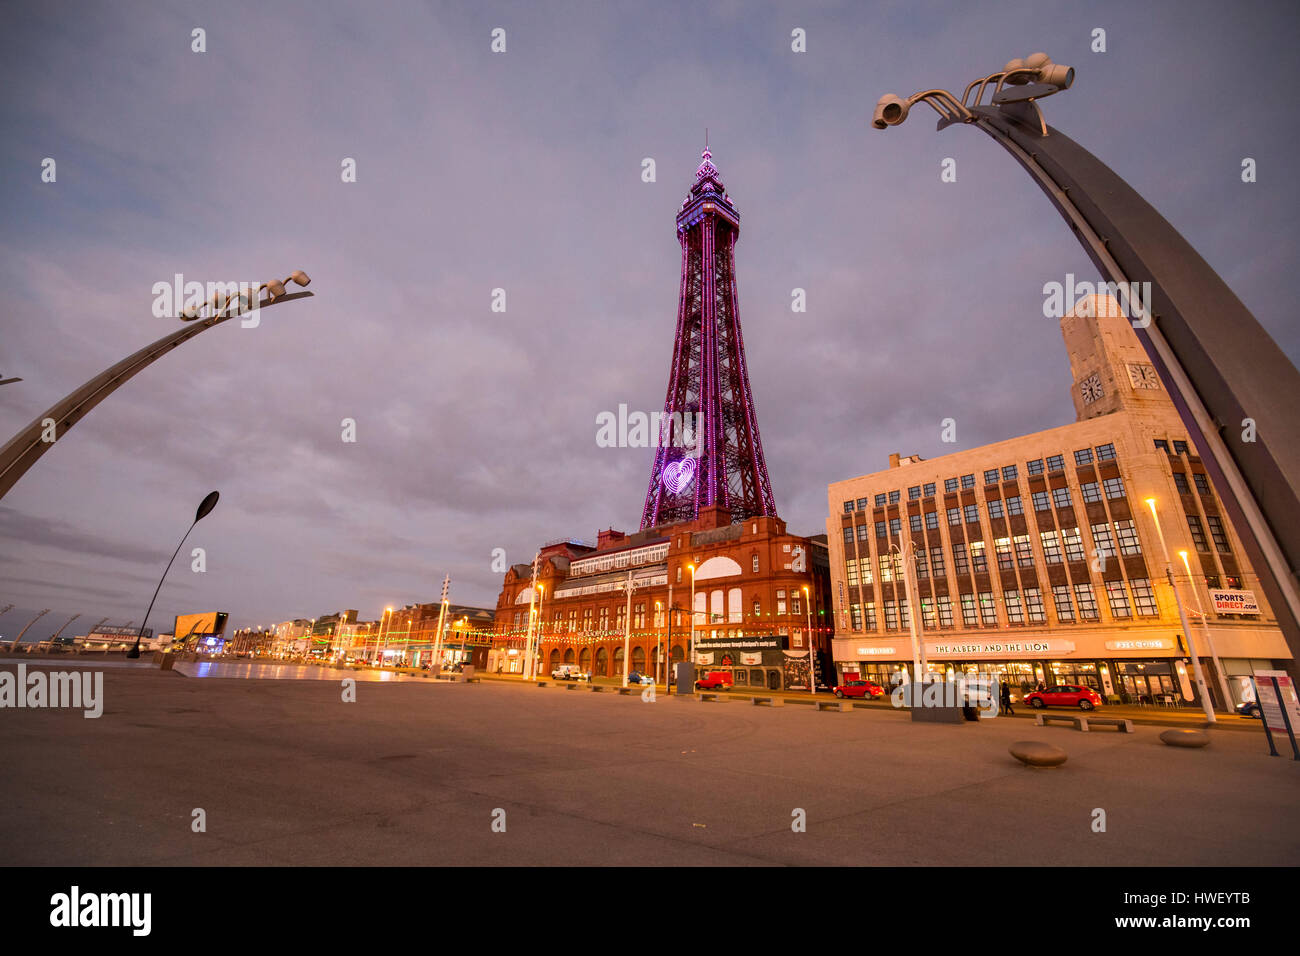 Blackpool -  a seaside resort on the Irish Sea coast of England. Blackpool Tower illuminated in purple light. Stock Photo